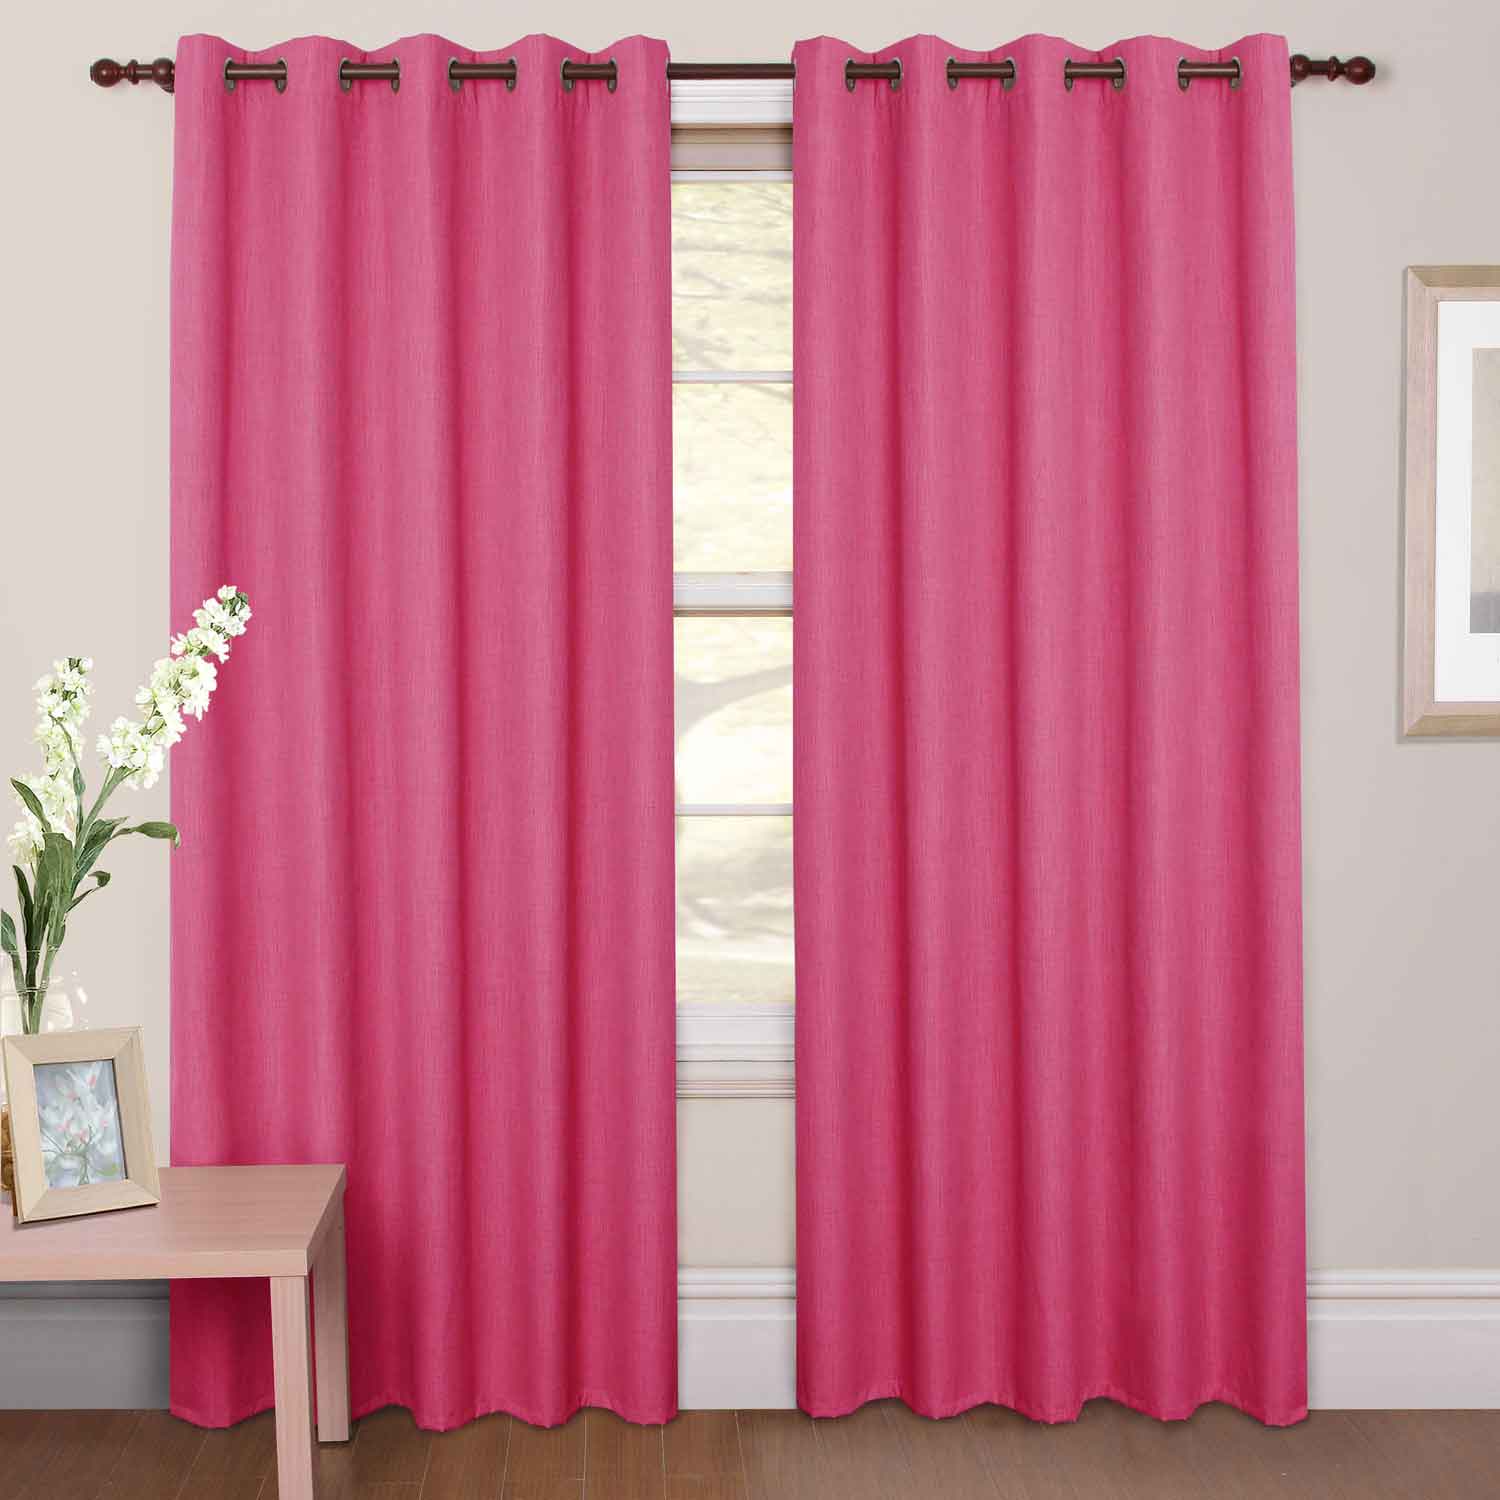 Light pink blackout curtains : Furniture Ideas | DeltaAngelGroup